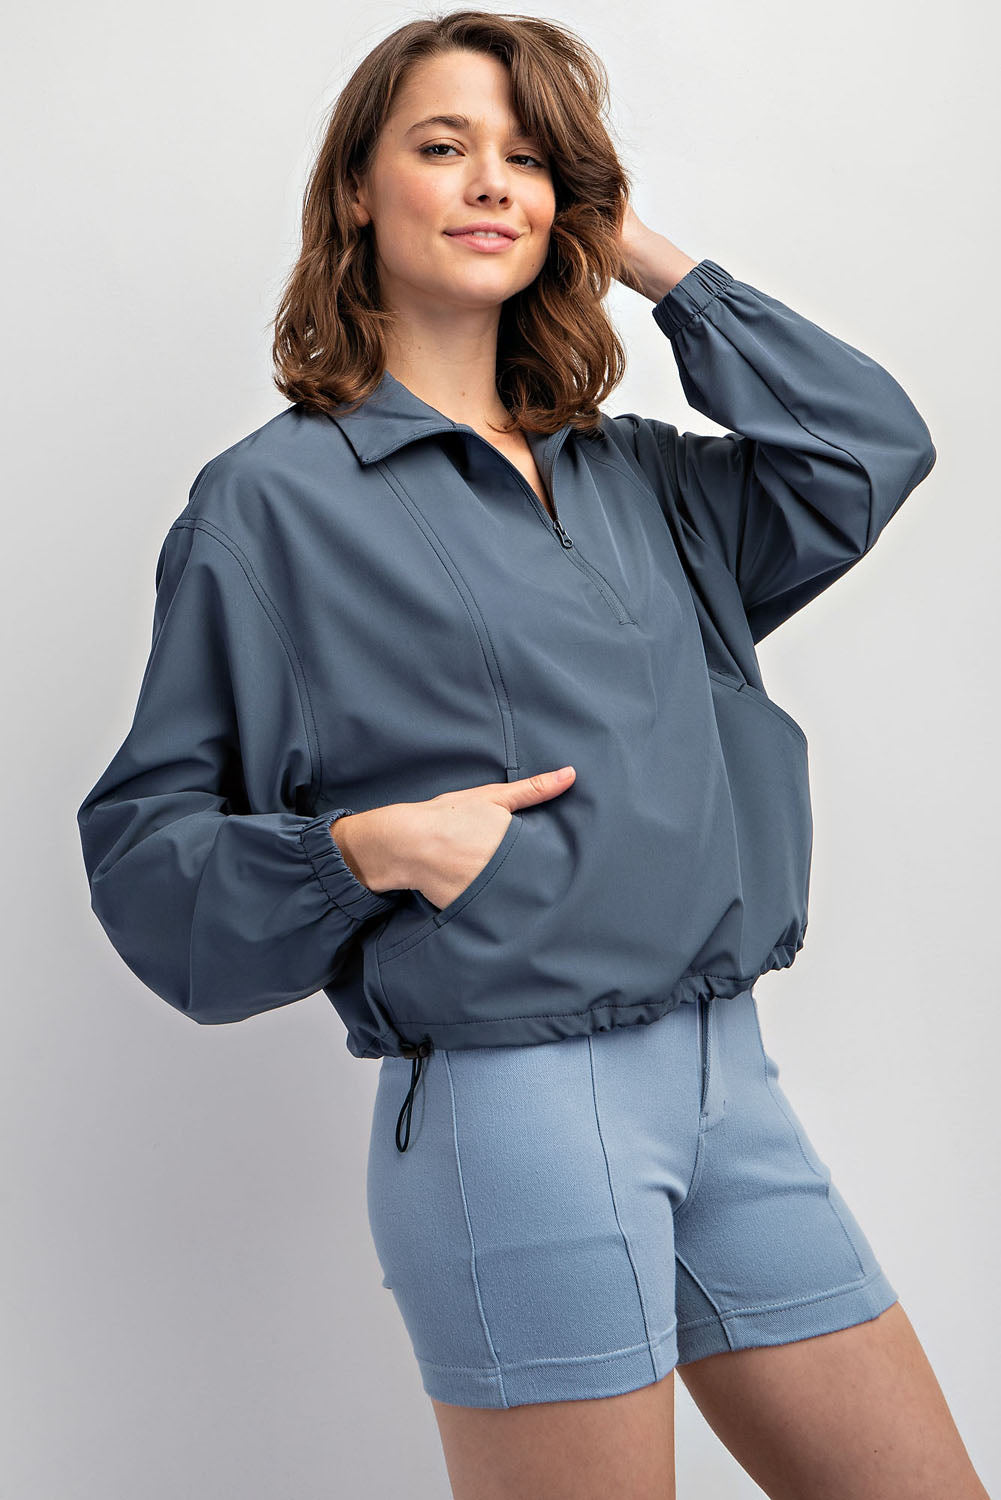 Quarter Zip Pullover Jacket - Slate Blue